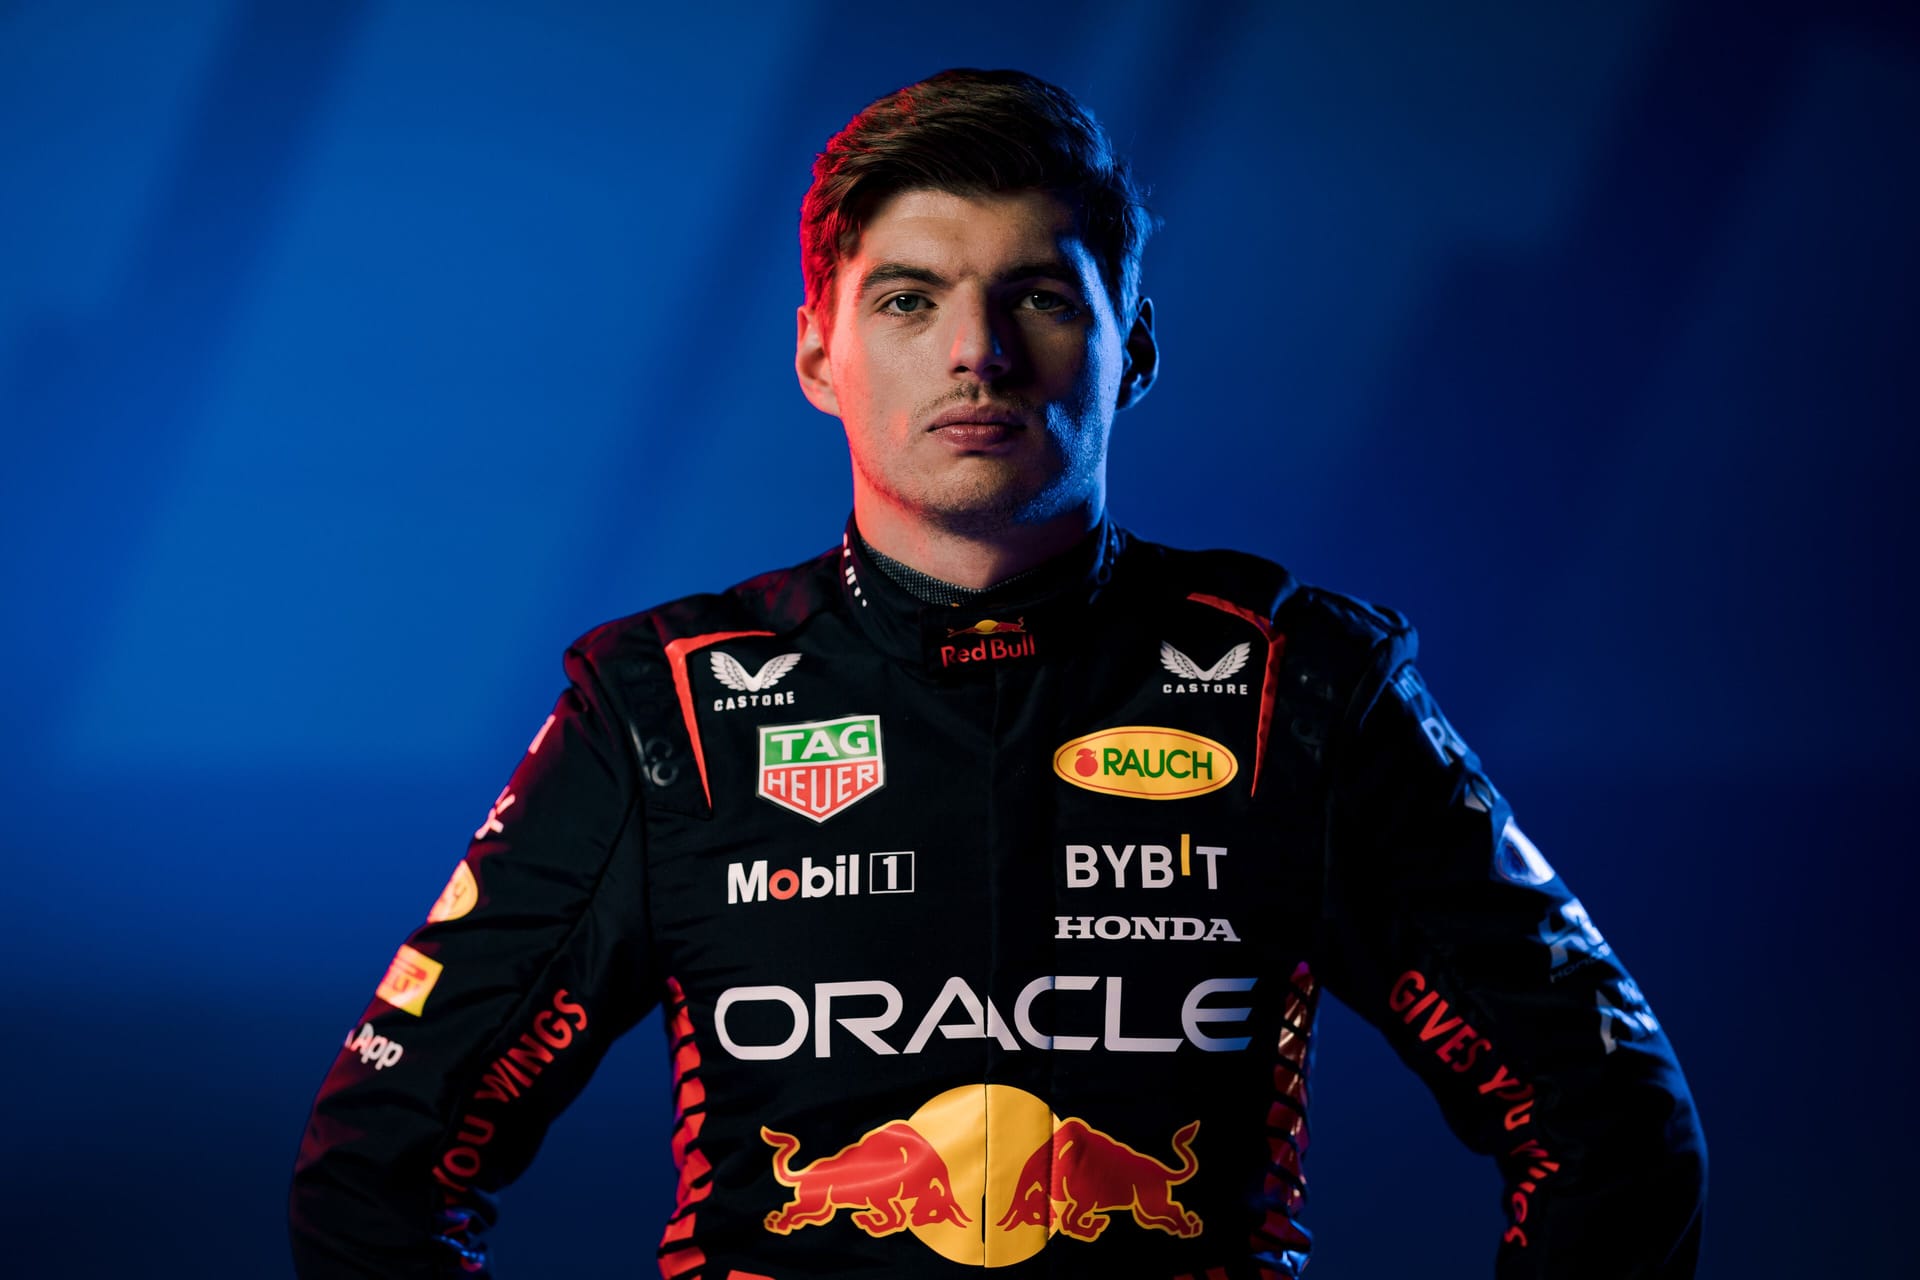 Der Titelverteidiger: Max Verstappen wird im Red Bull alles daran setzen, seinen dritten WM-Titel in Folge zu holen. Der 25-jährige Niederländer fährt seit 2016 für den Rennstall.